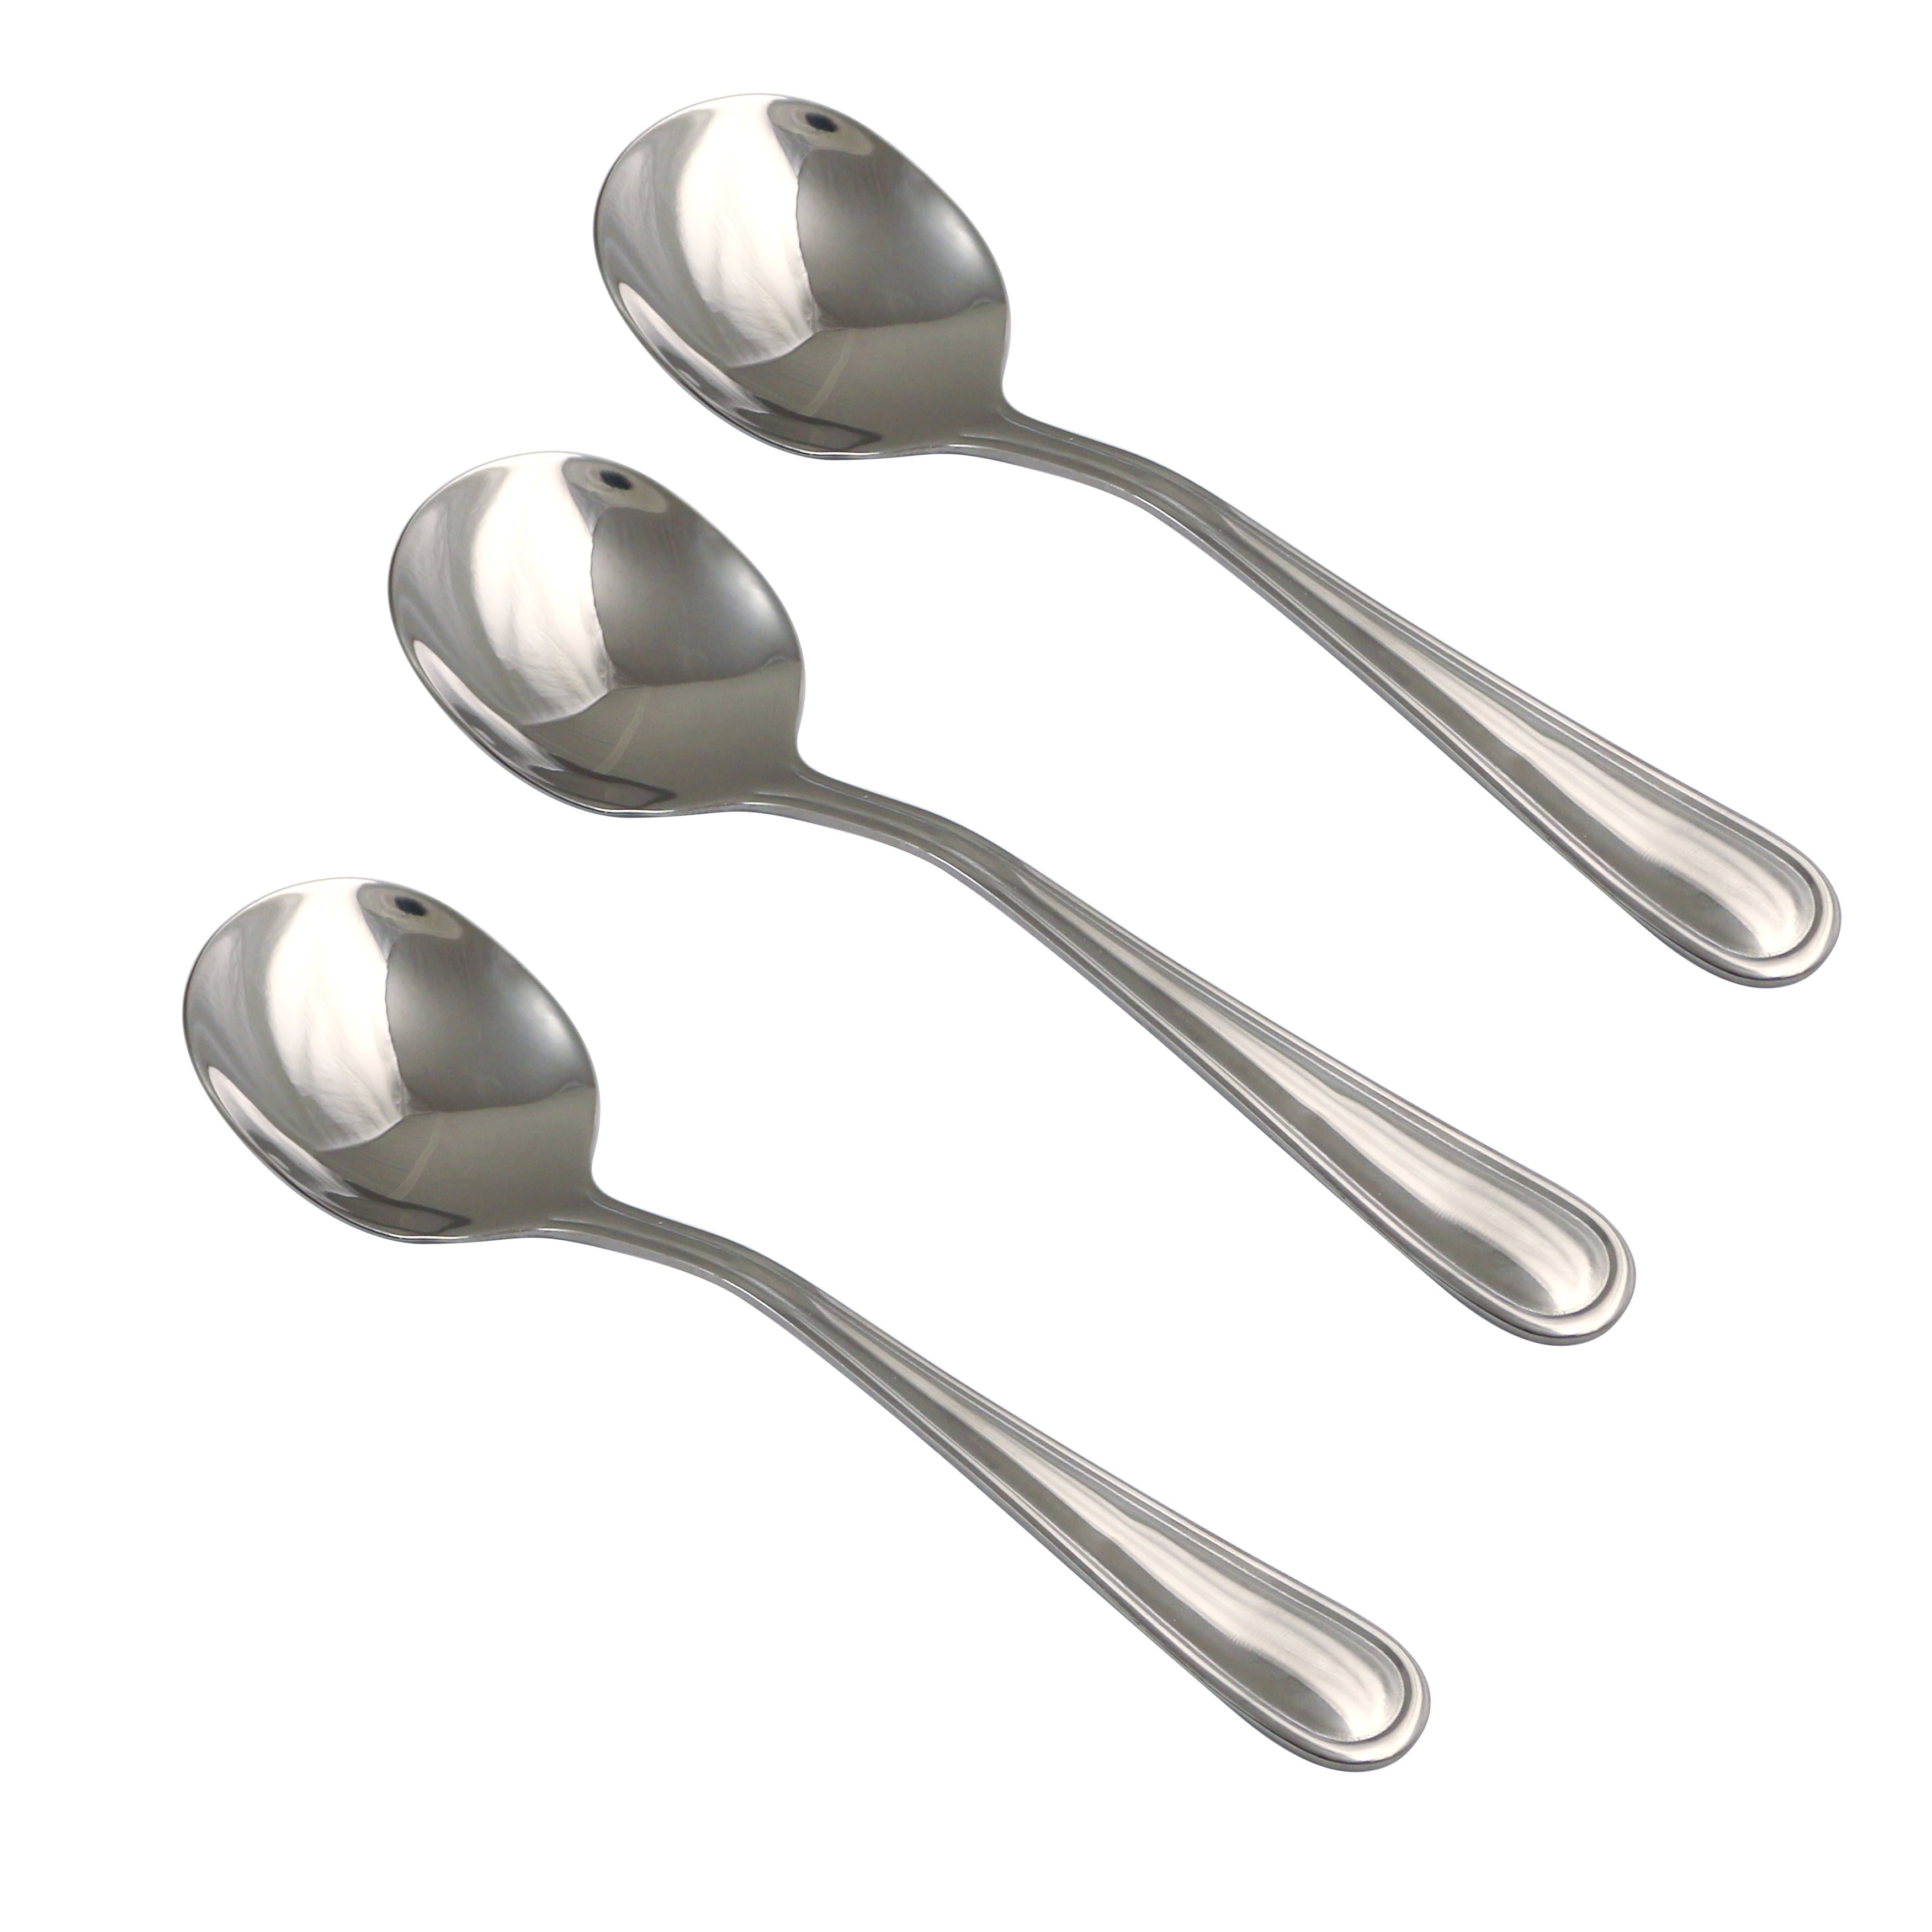 Member's Mark Stainless Steel Kitchen Spoons (3 pk.)